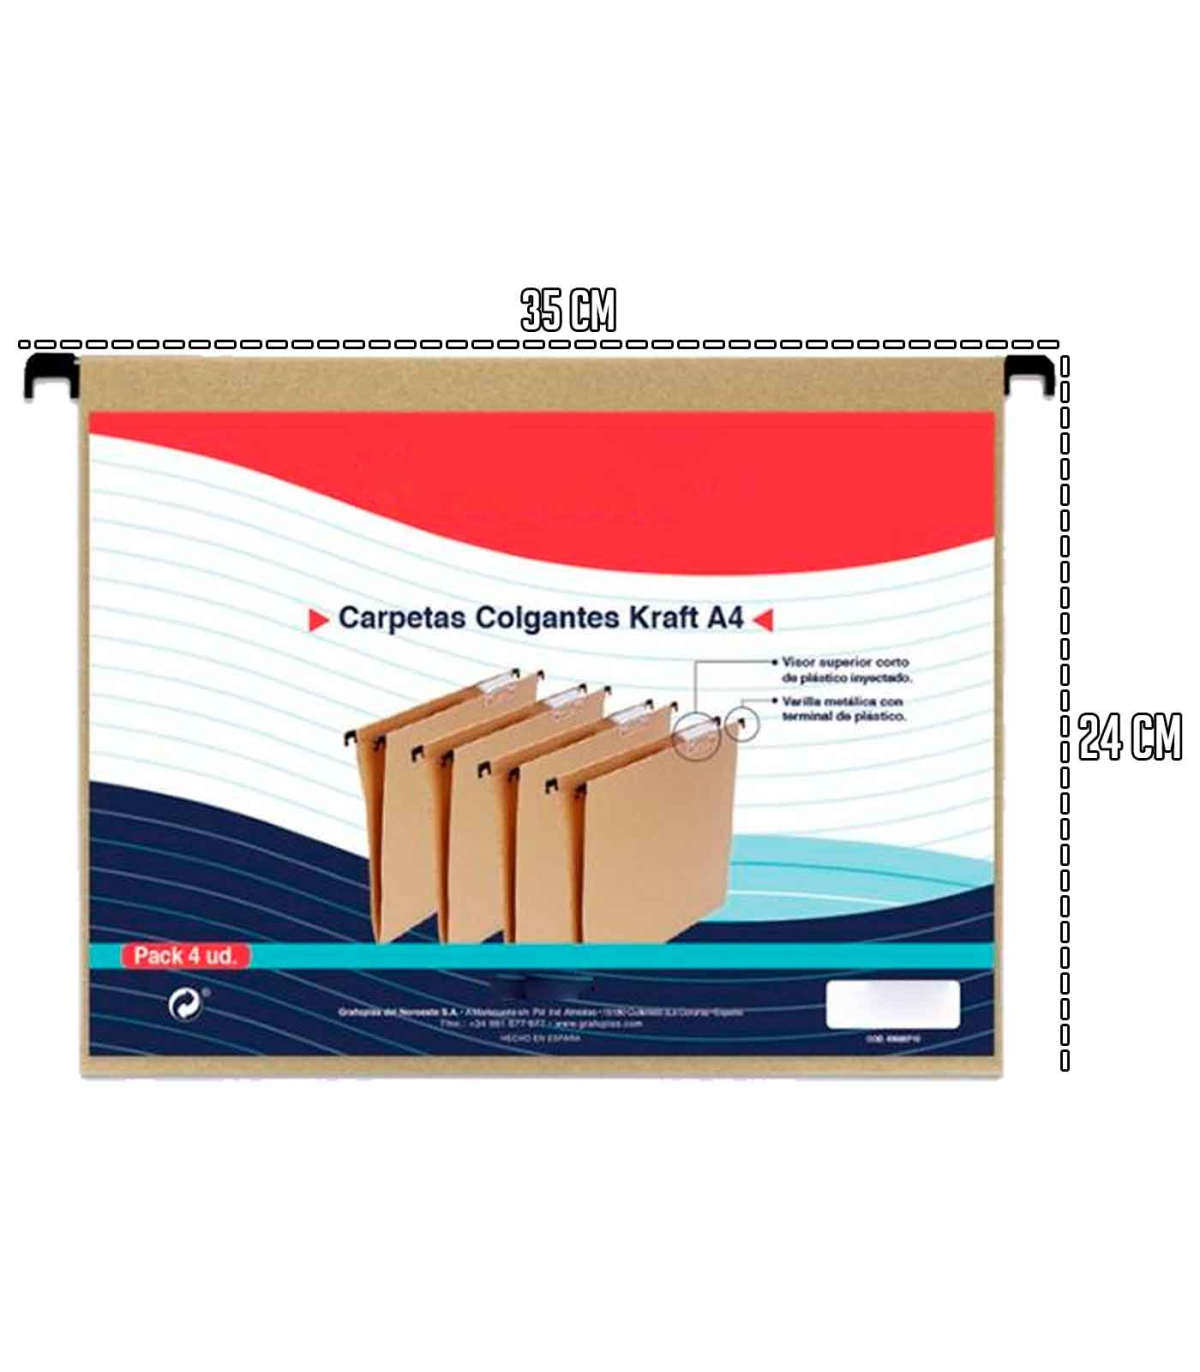 Tradineur - Pack de carpetas colgantes - 4 Unidades Ideal para guardar, u organizar los documentos - Color Marrón (kr